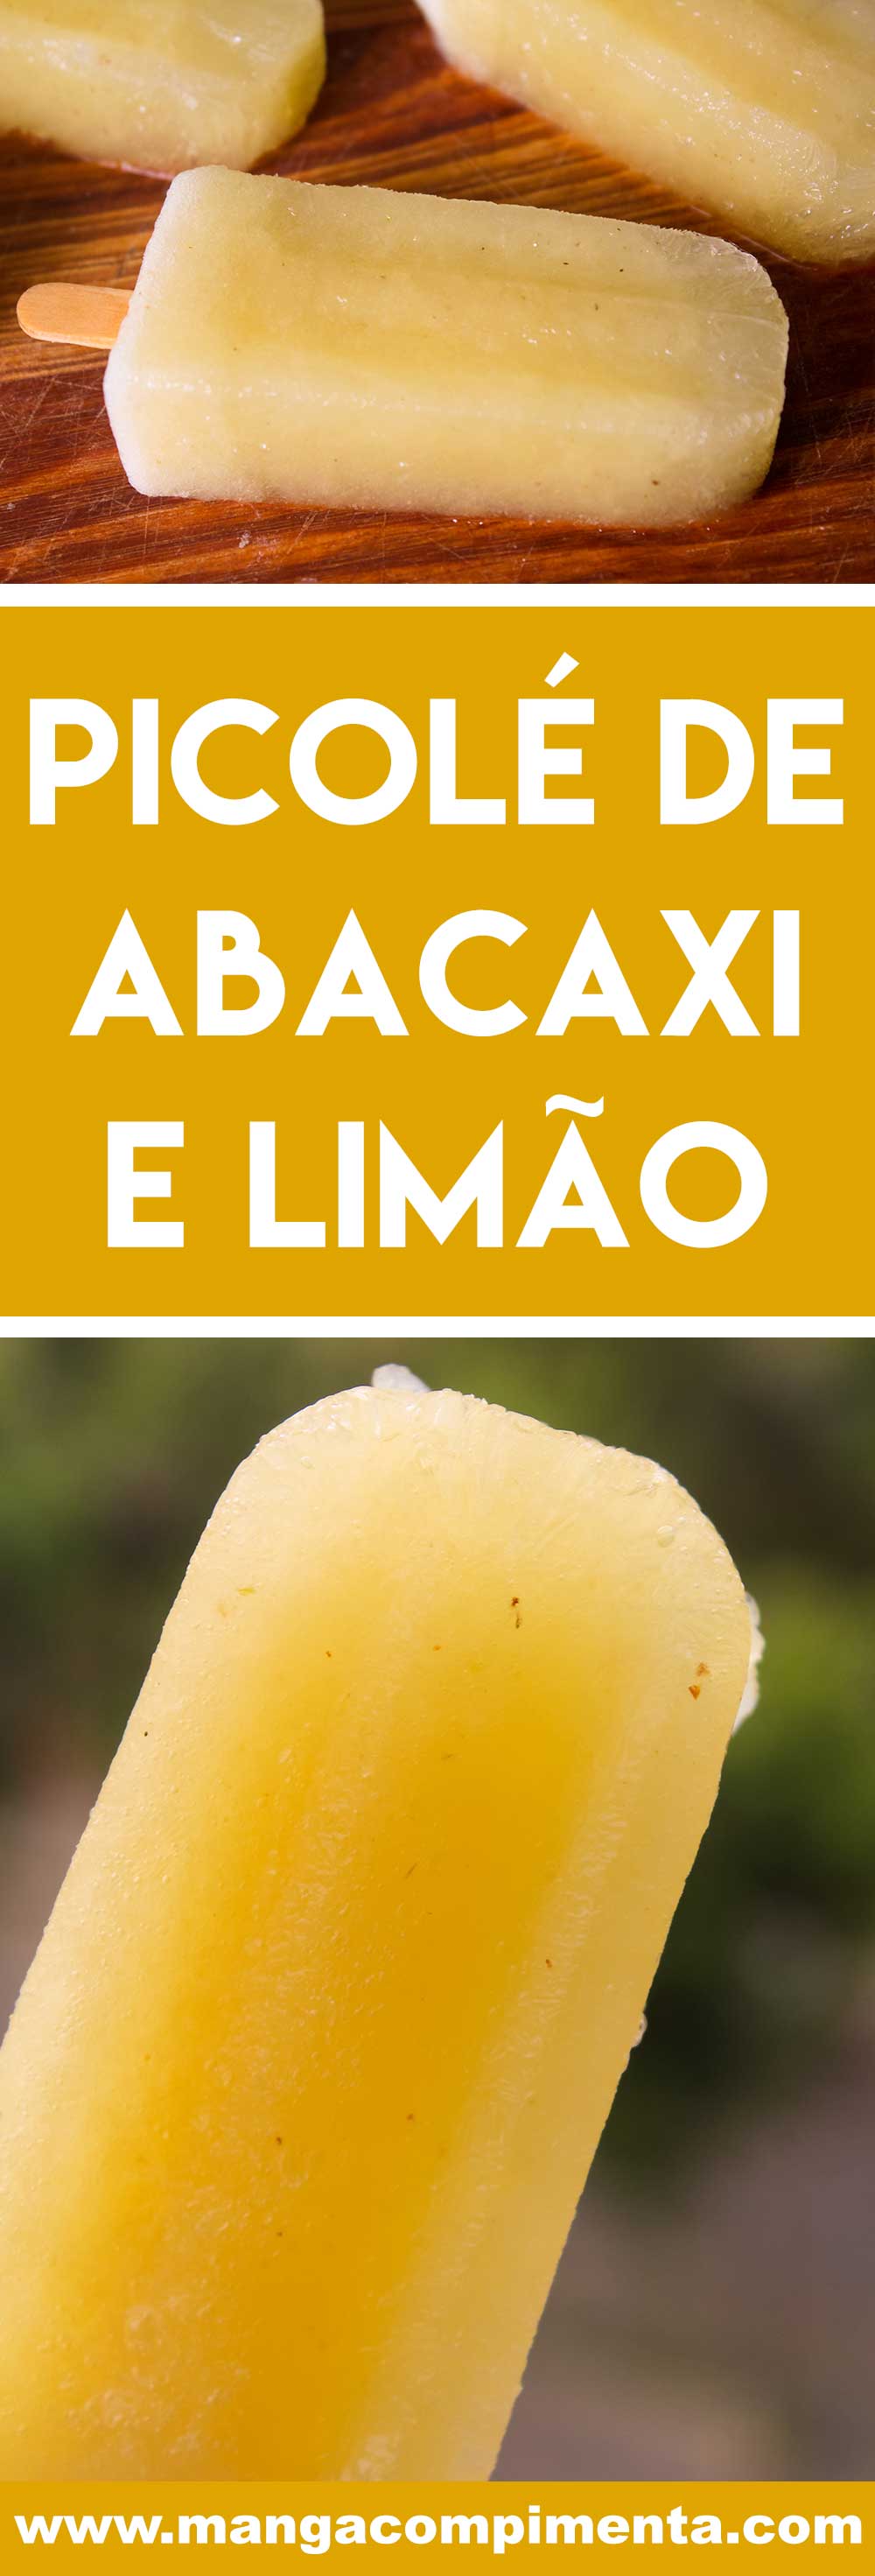 Receita de Picolé de Abacaxi e Limão - uma delícia para servir no lanche da tarde!